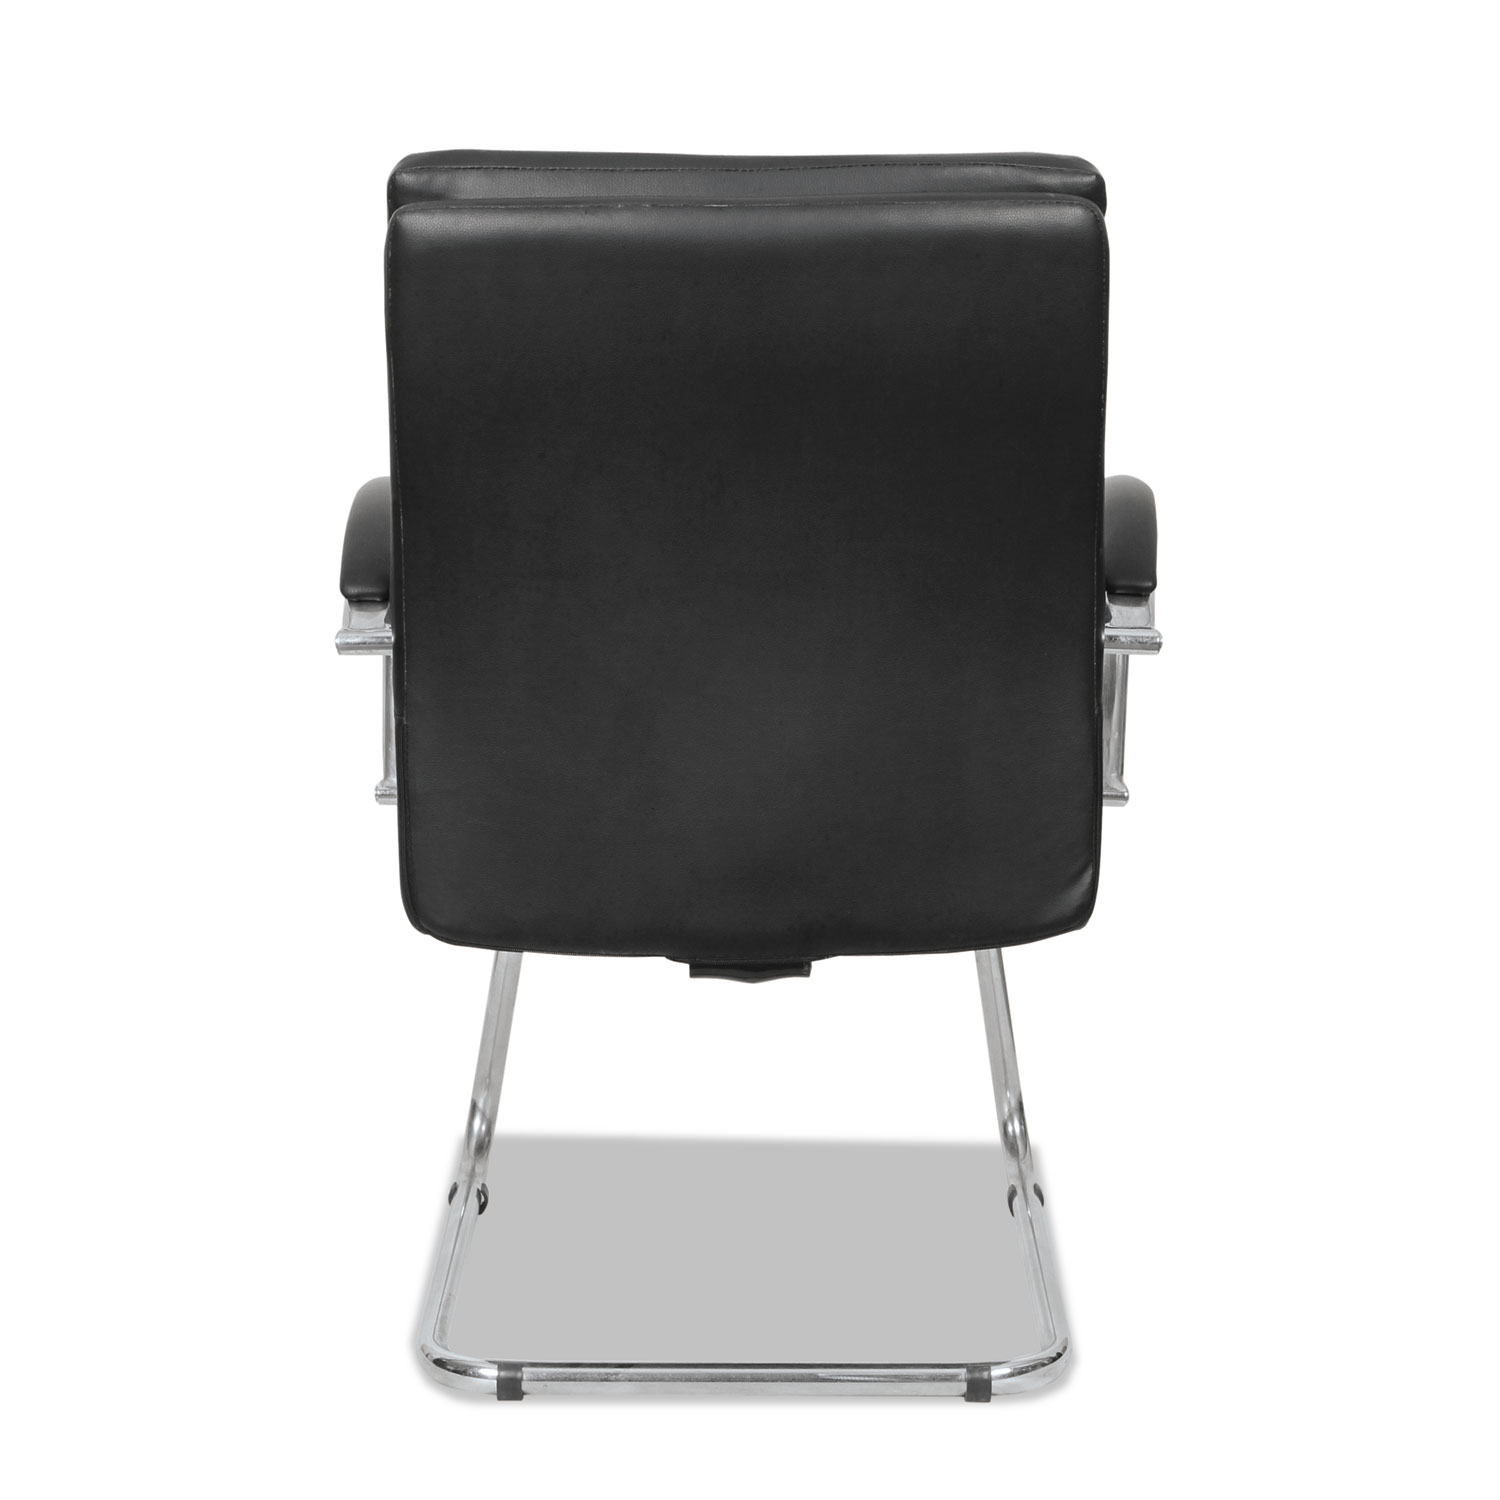 Alera Neratoli Slim Profile Guest Chair, 23.5